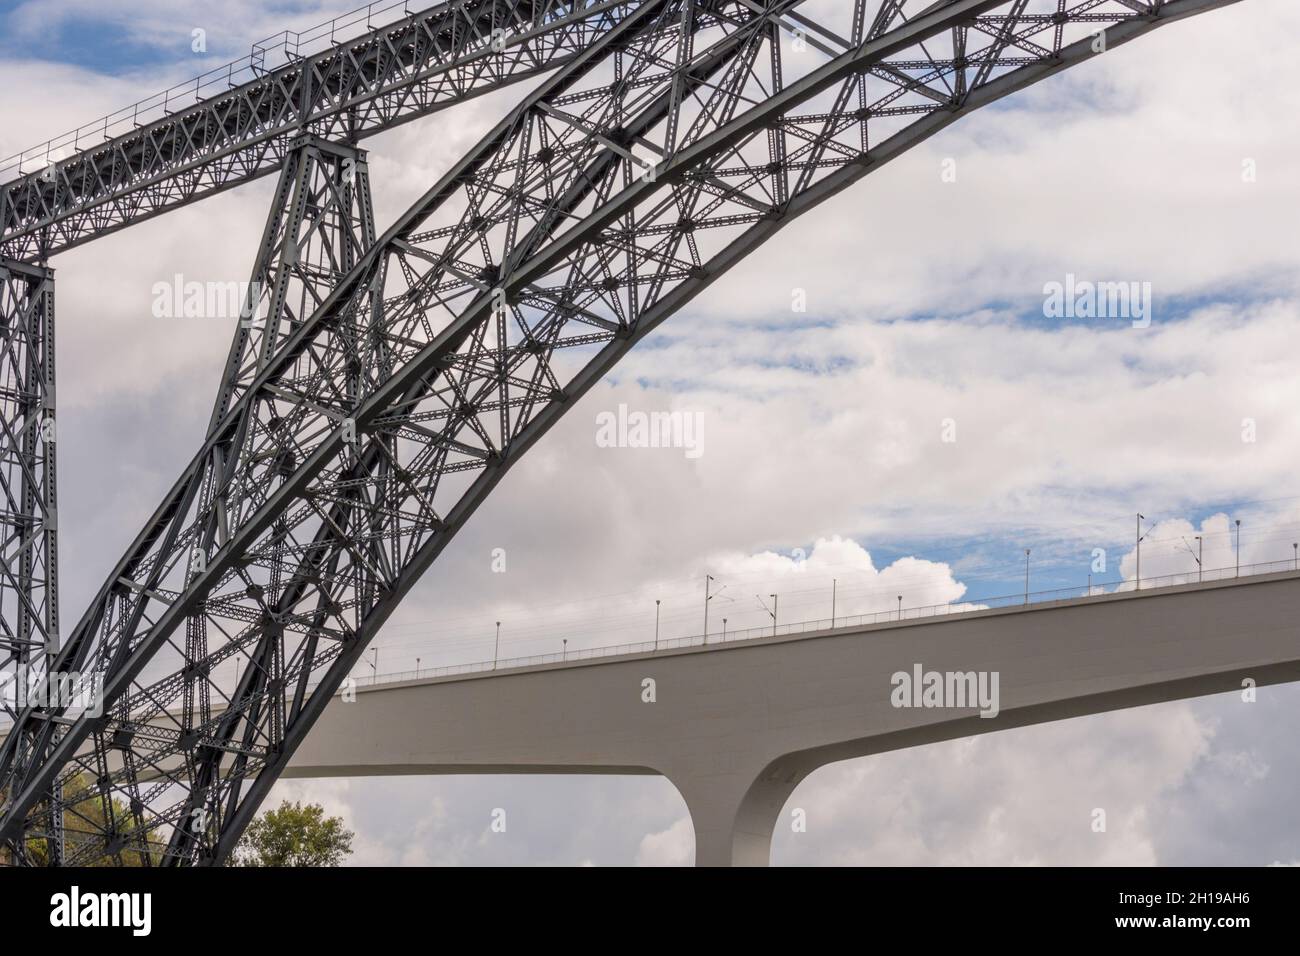 D. Maria Pia iron bridge and Sao Joao Bridge in Porto, Portugal Stock Photo